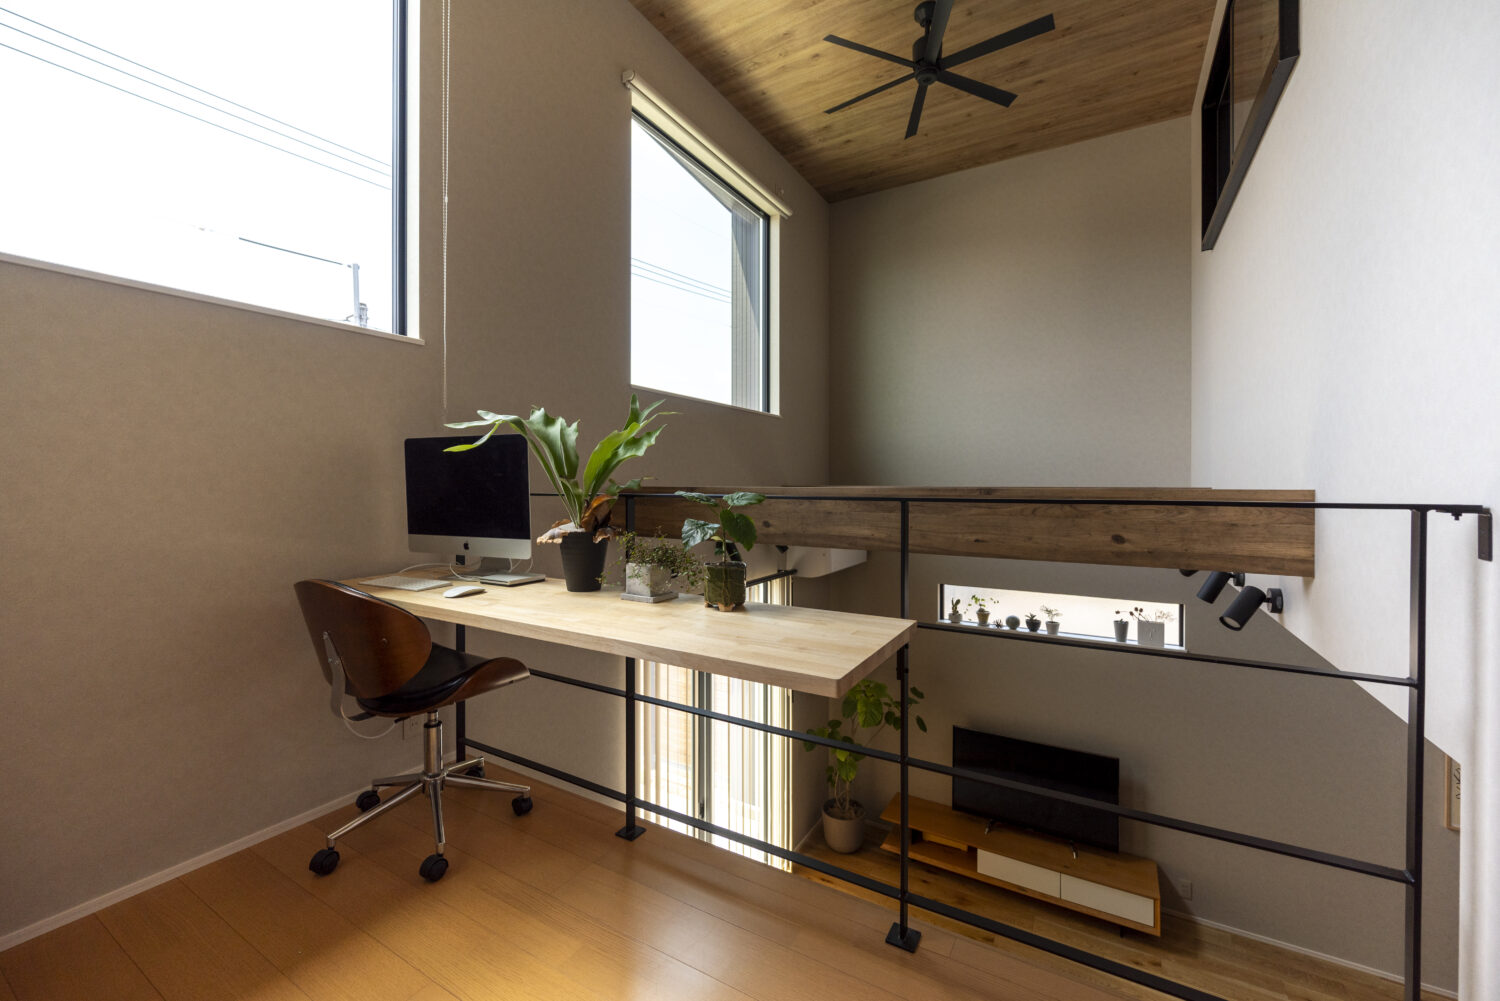 広島県福山市
アイデザインホーム
注文住宅
スキップフロアにはスタディスペースとして使えるカウンターを設置
2Fの洋室には明るい吹抜に面した室内窓を採用しています